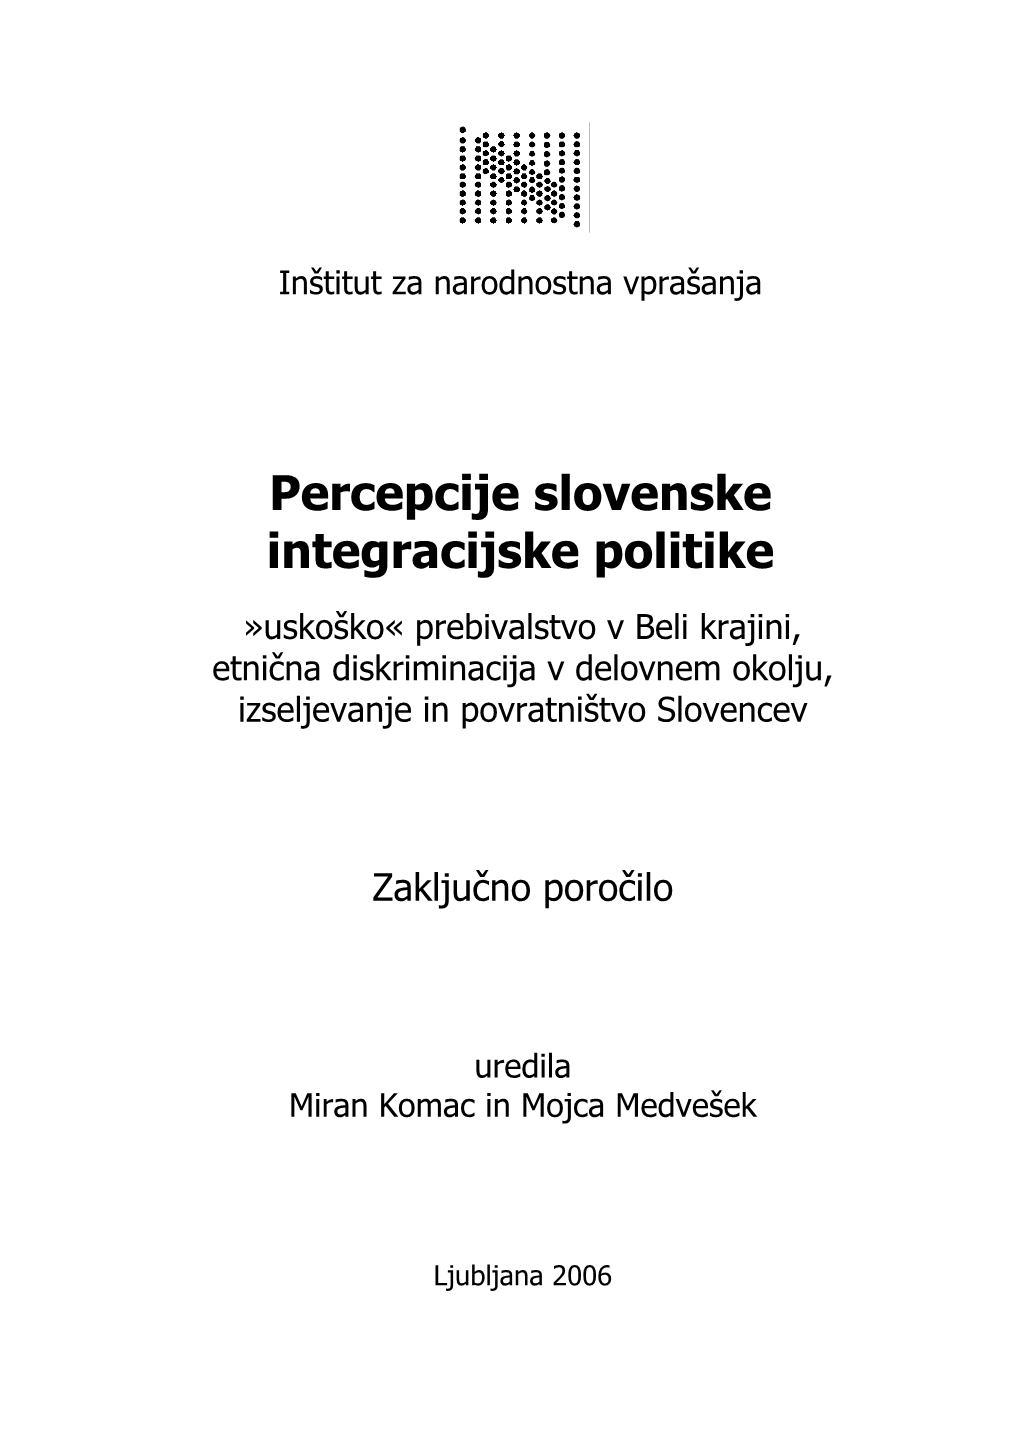 Percepcije Slovenske Integracijske Politike